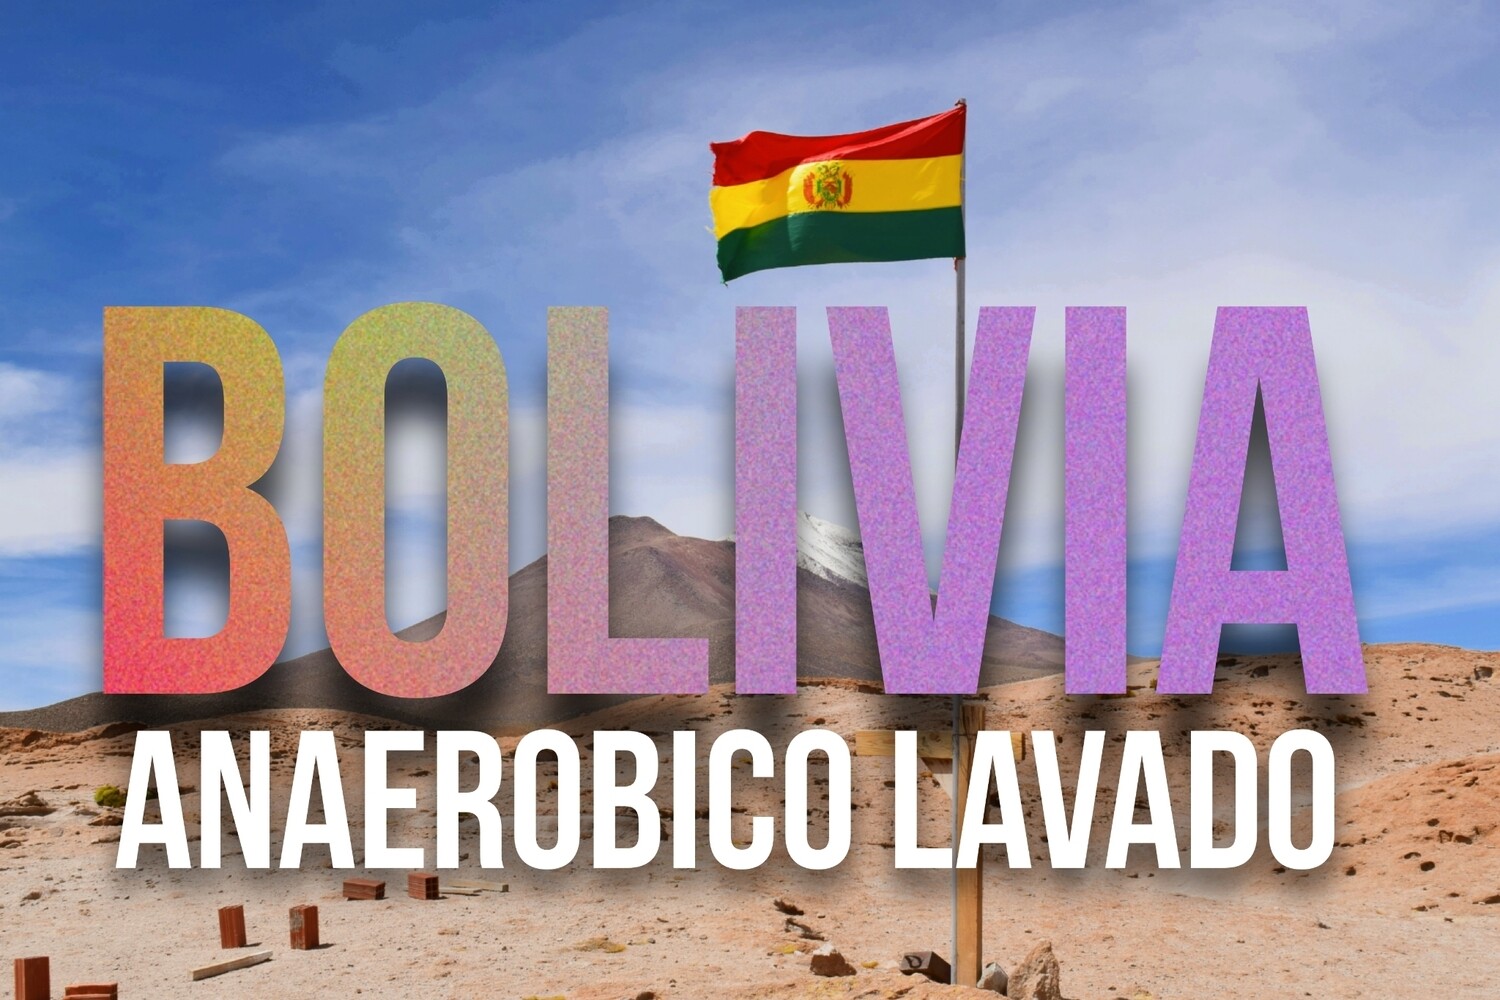 Bolivia Anaerobico Lavado